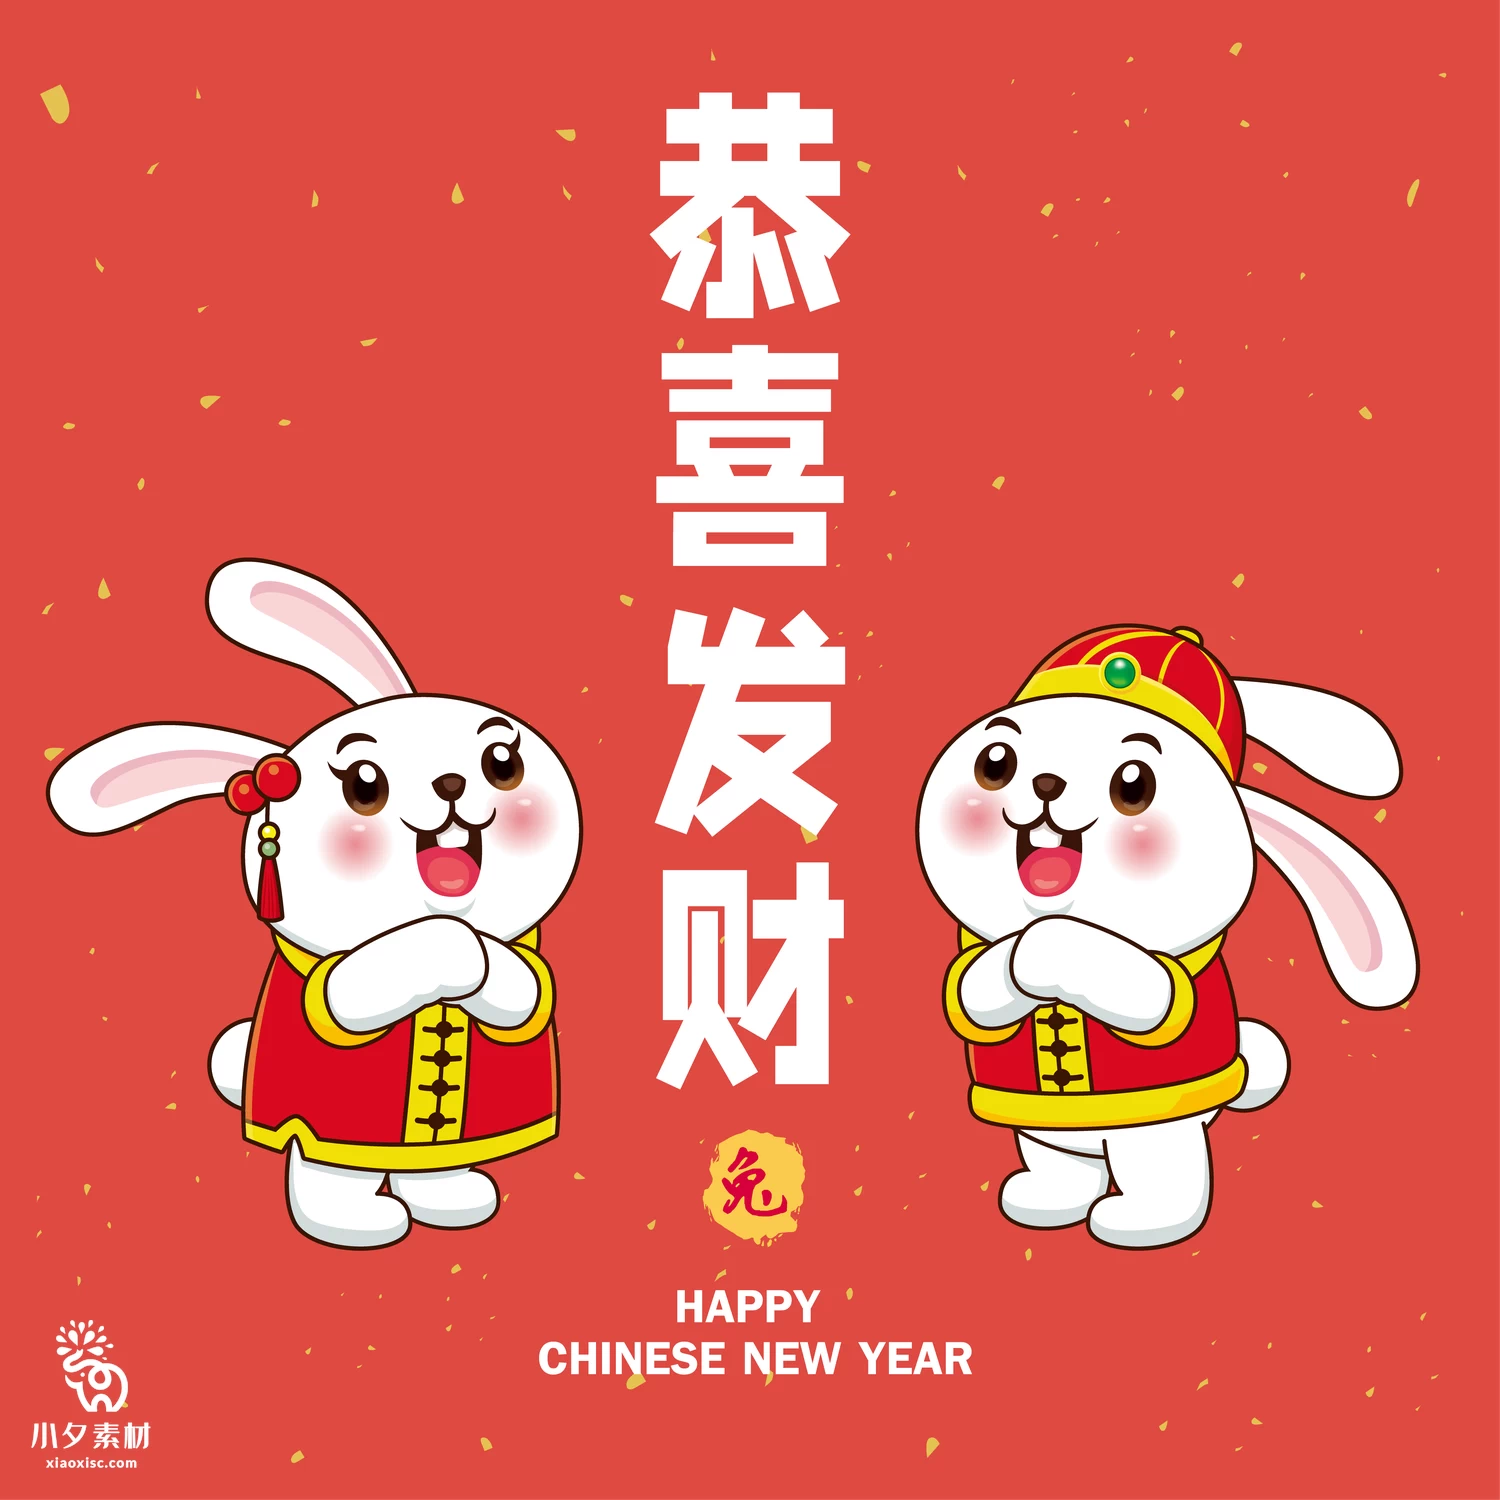 2023年兔年恭贺新春新年快乐喜庆节日宣传海报图片AI矢量设计素材【027】